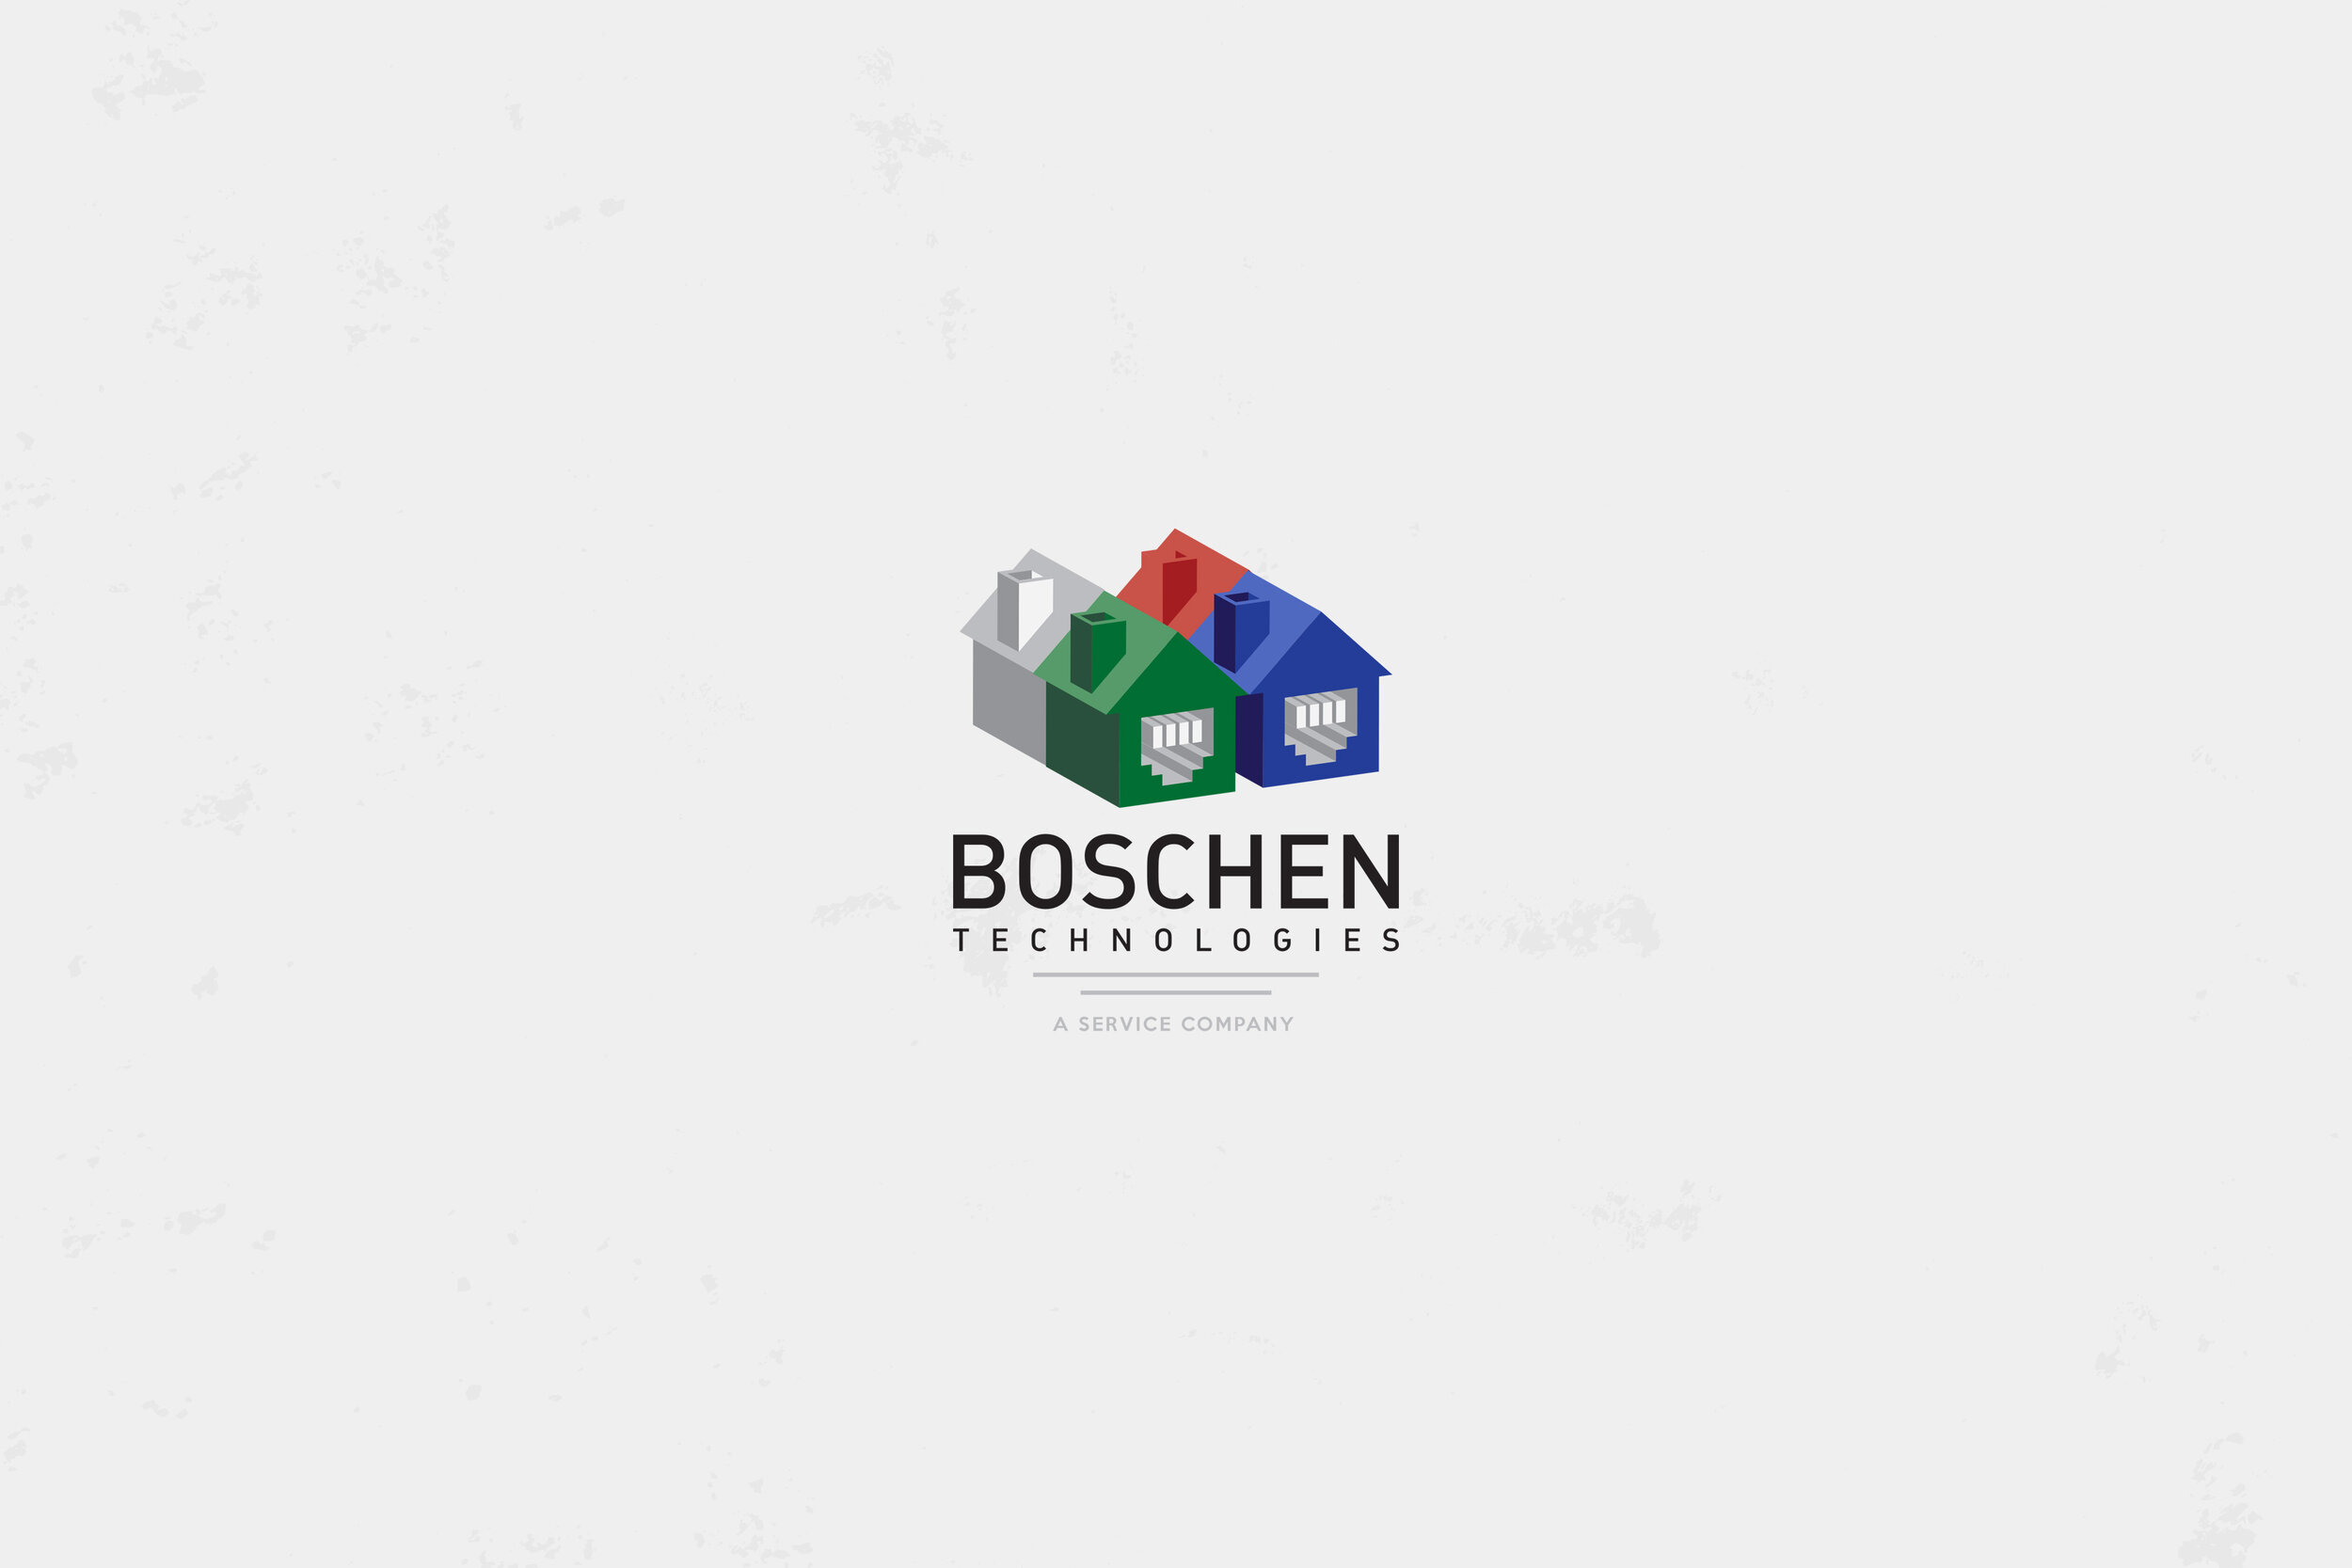 BOSCHEN-Website-Work-07.jpg